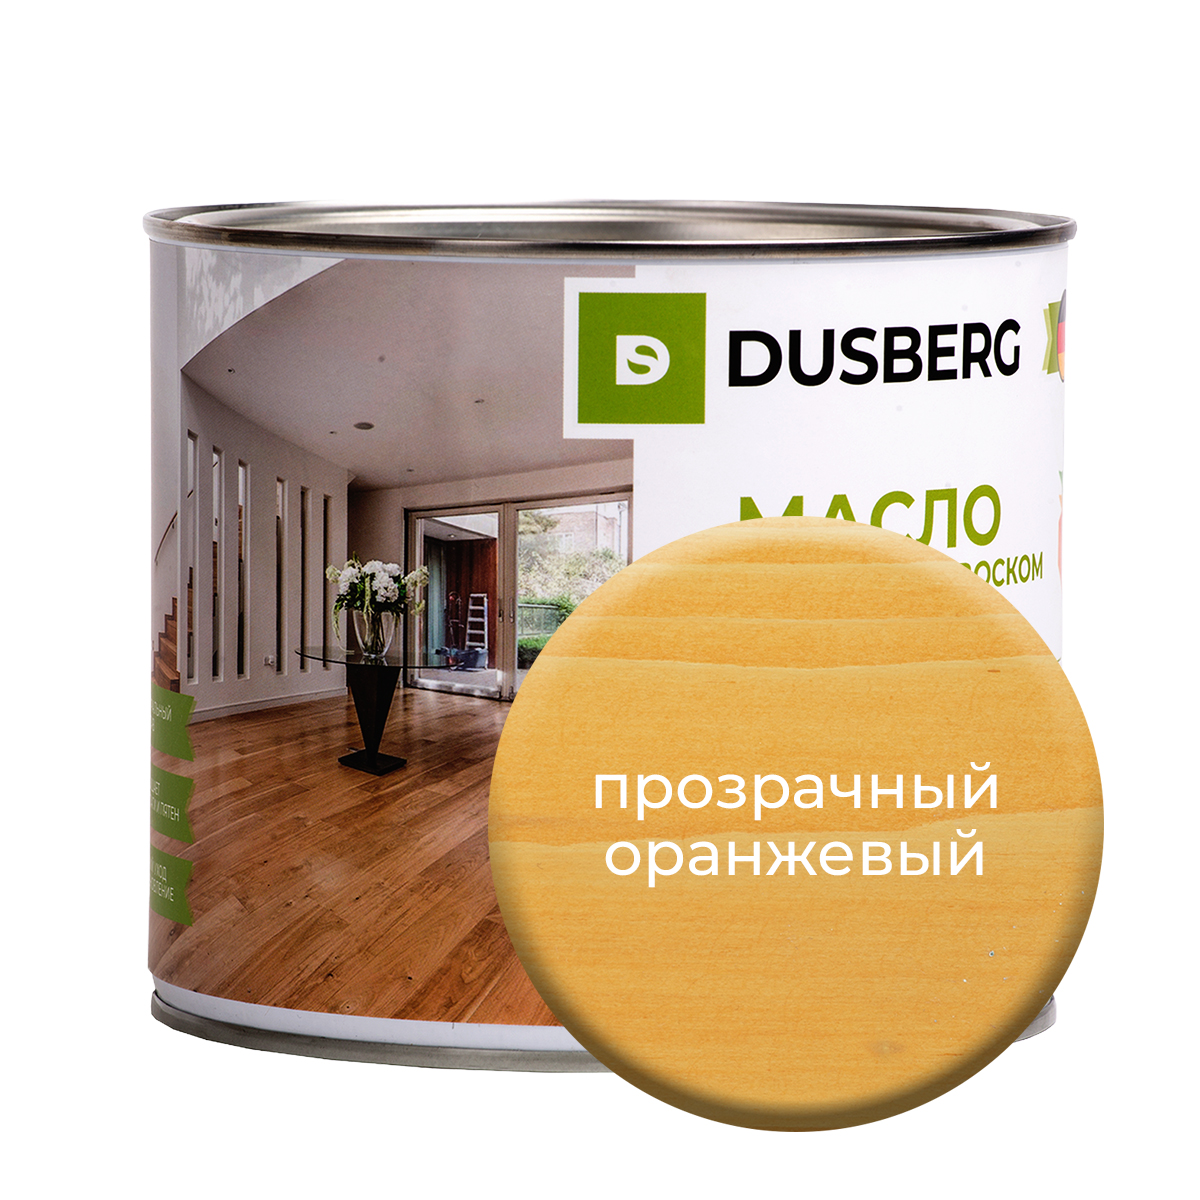 Масло Dusberg с твердым воском на бесцветной основе, 2 л Прозрачный оранжевый масло воск для террасной доски brite flexx бес ное банка 0 75 л 212475